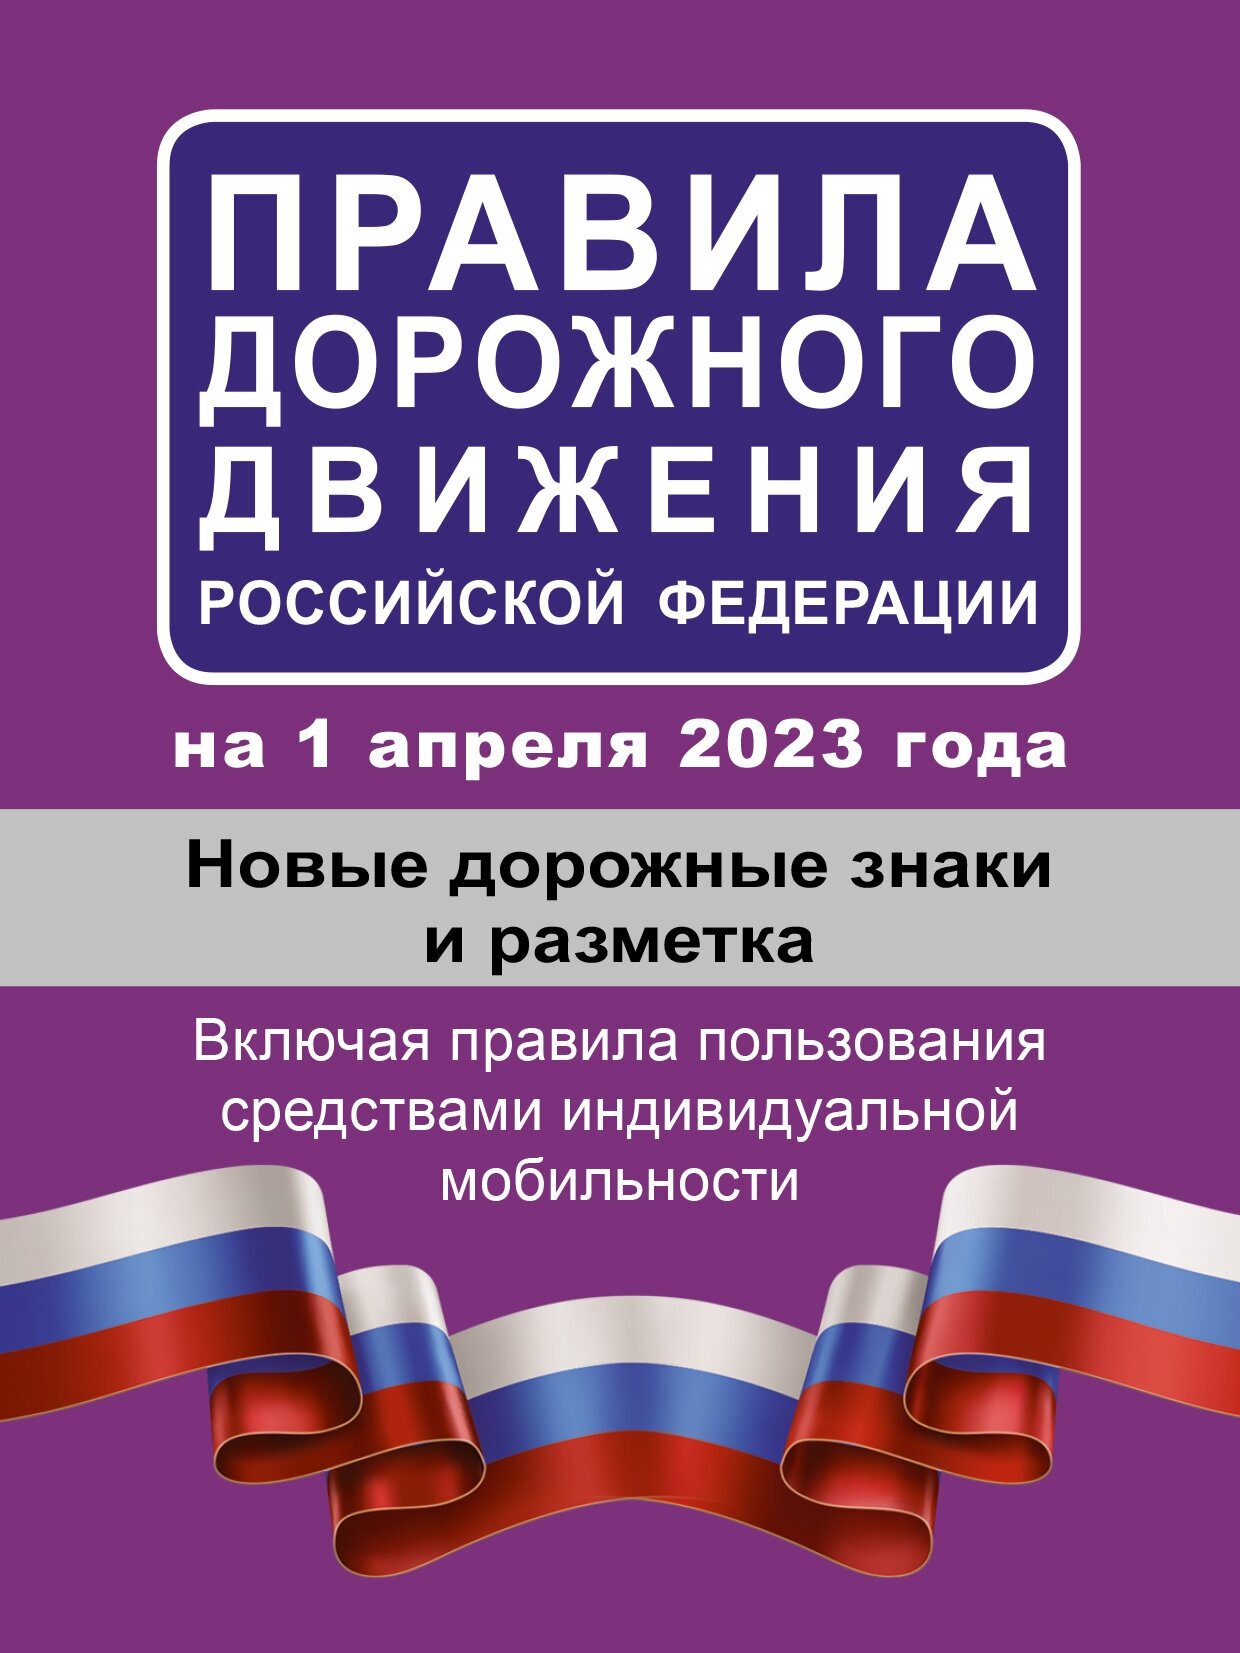 Правила дорожного движения РФ на 1 апреля 2023 года.